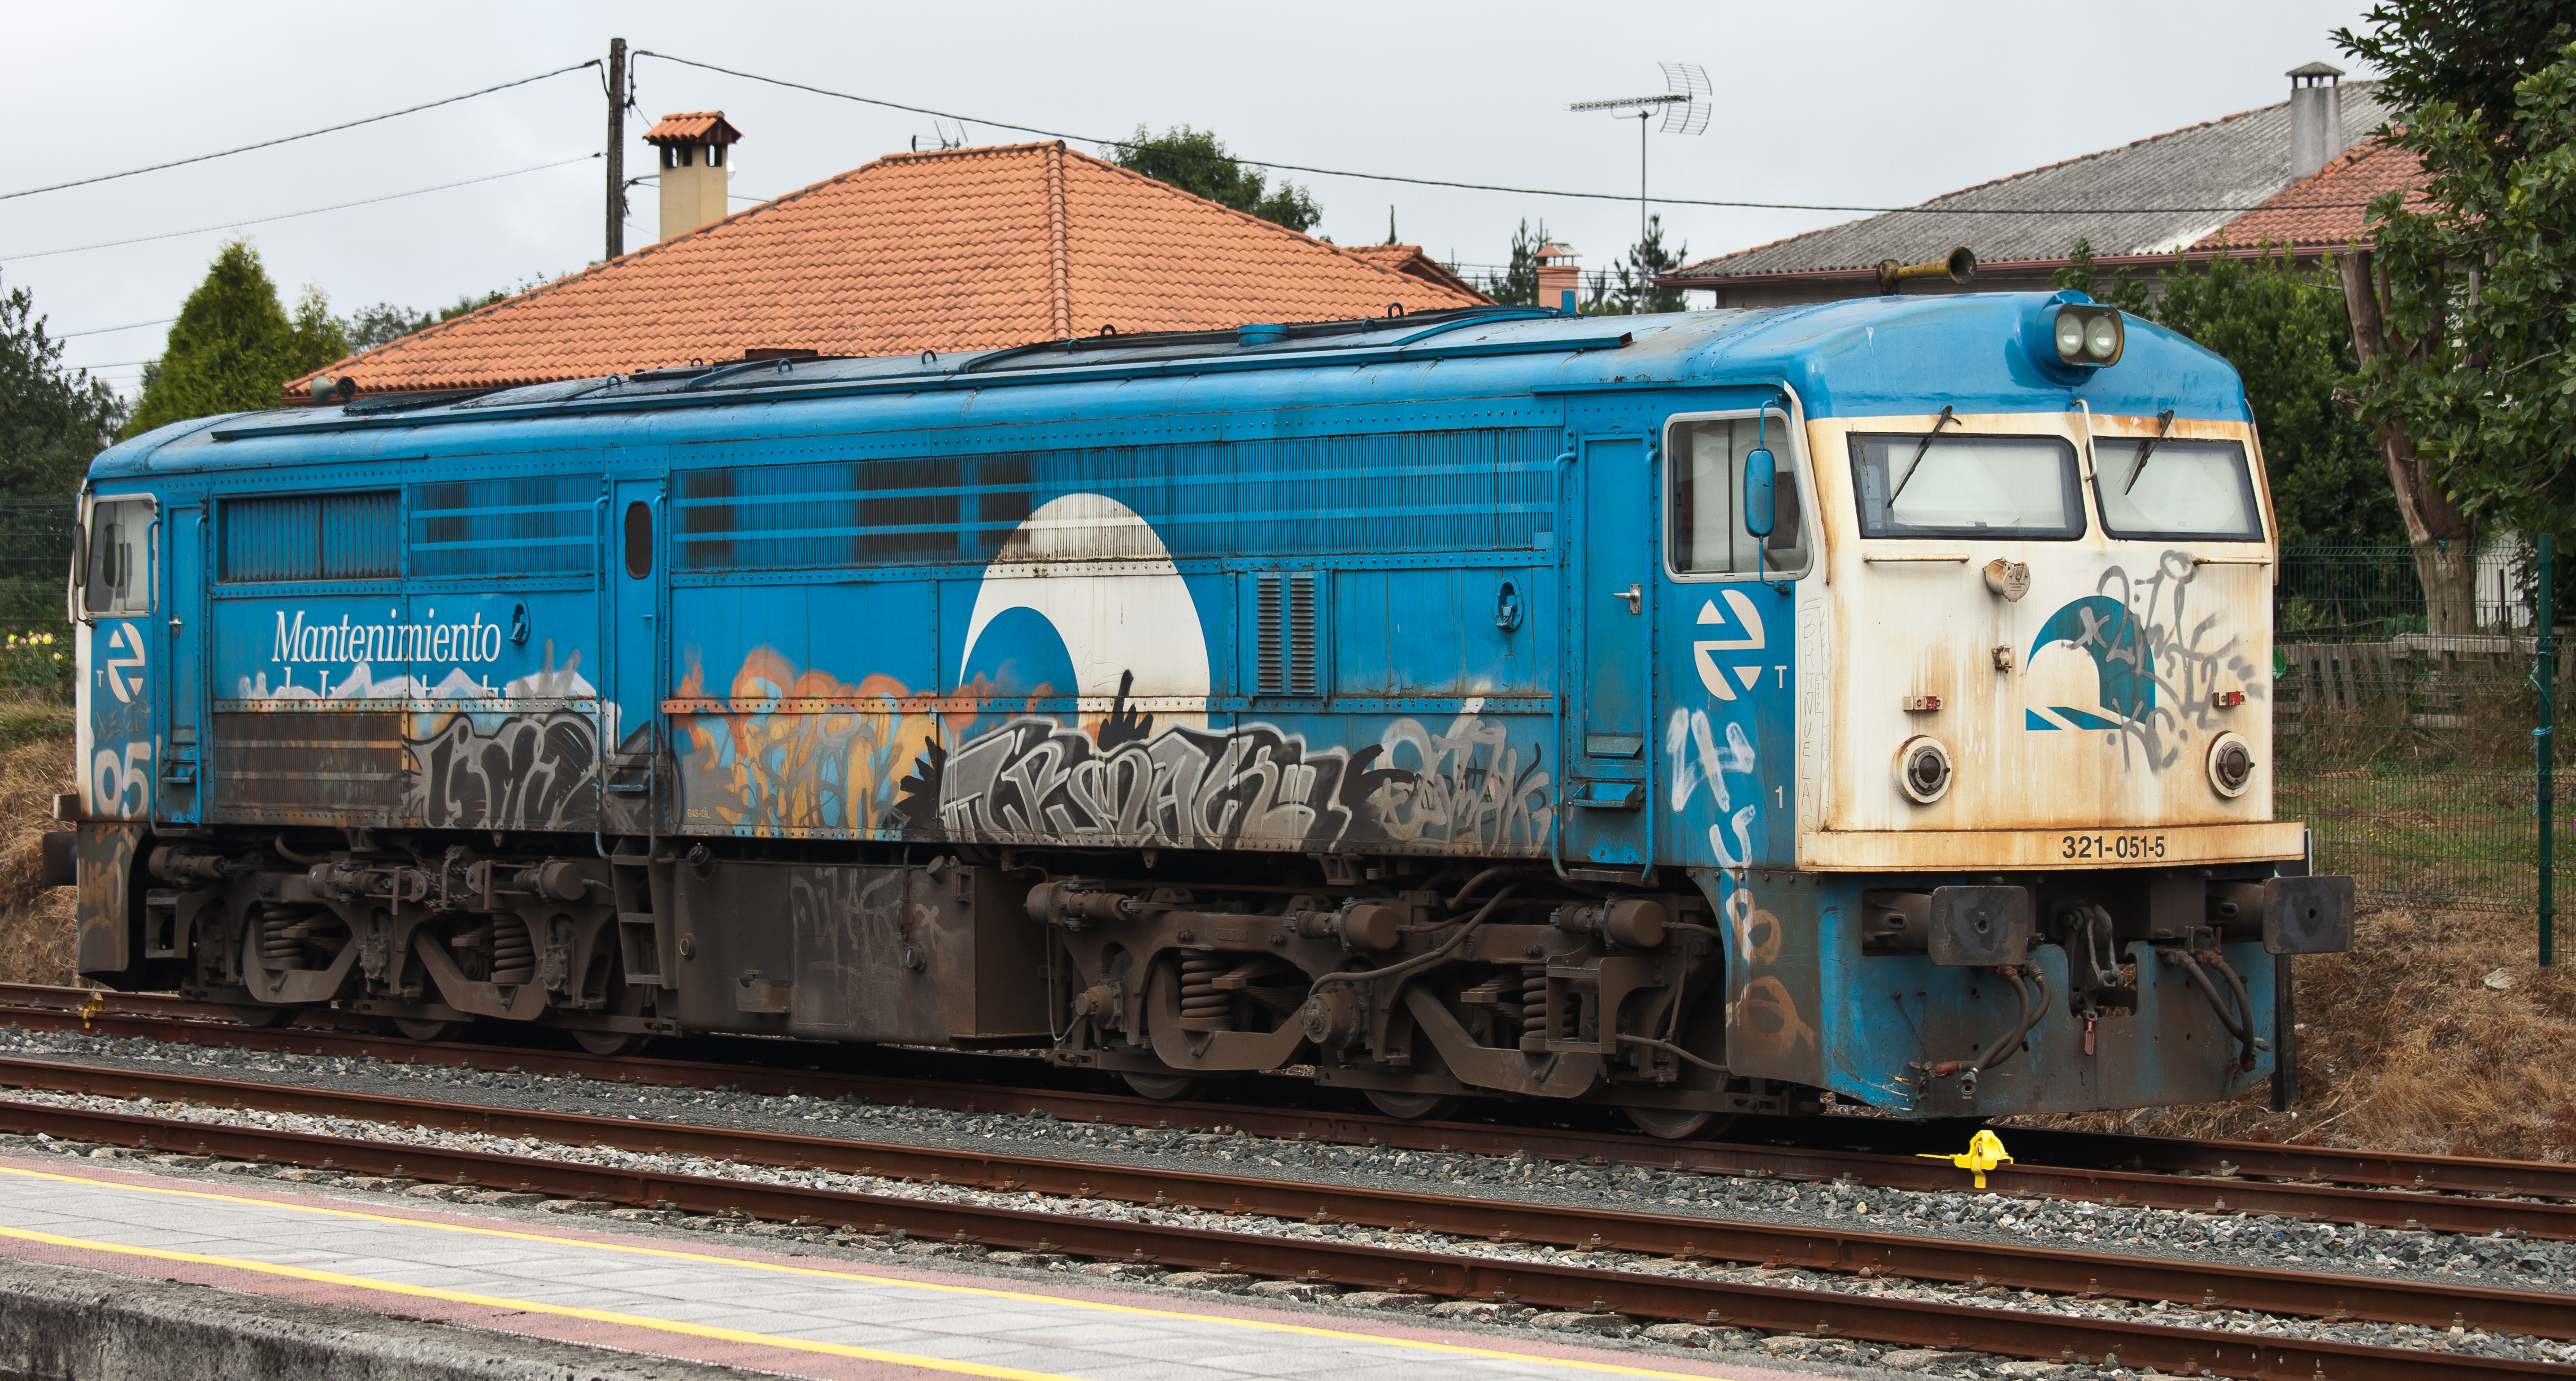 Tren de mantemento - Curtis - Galiza